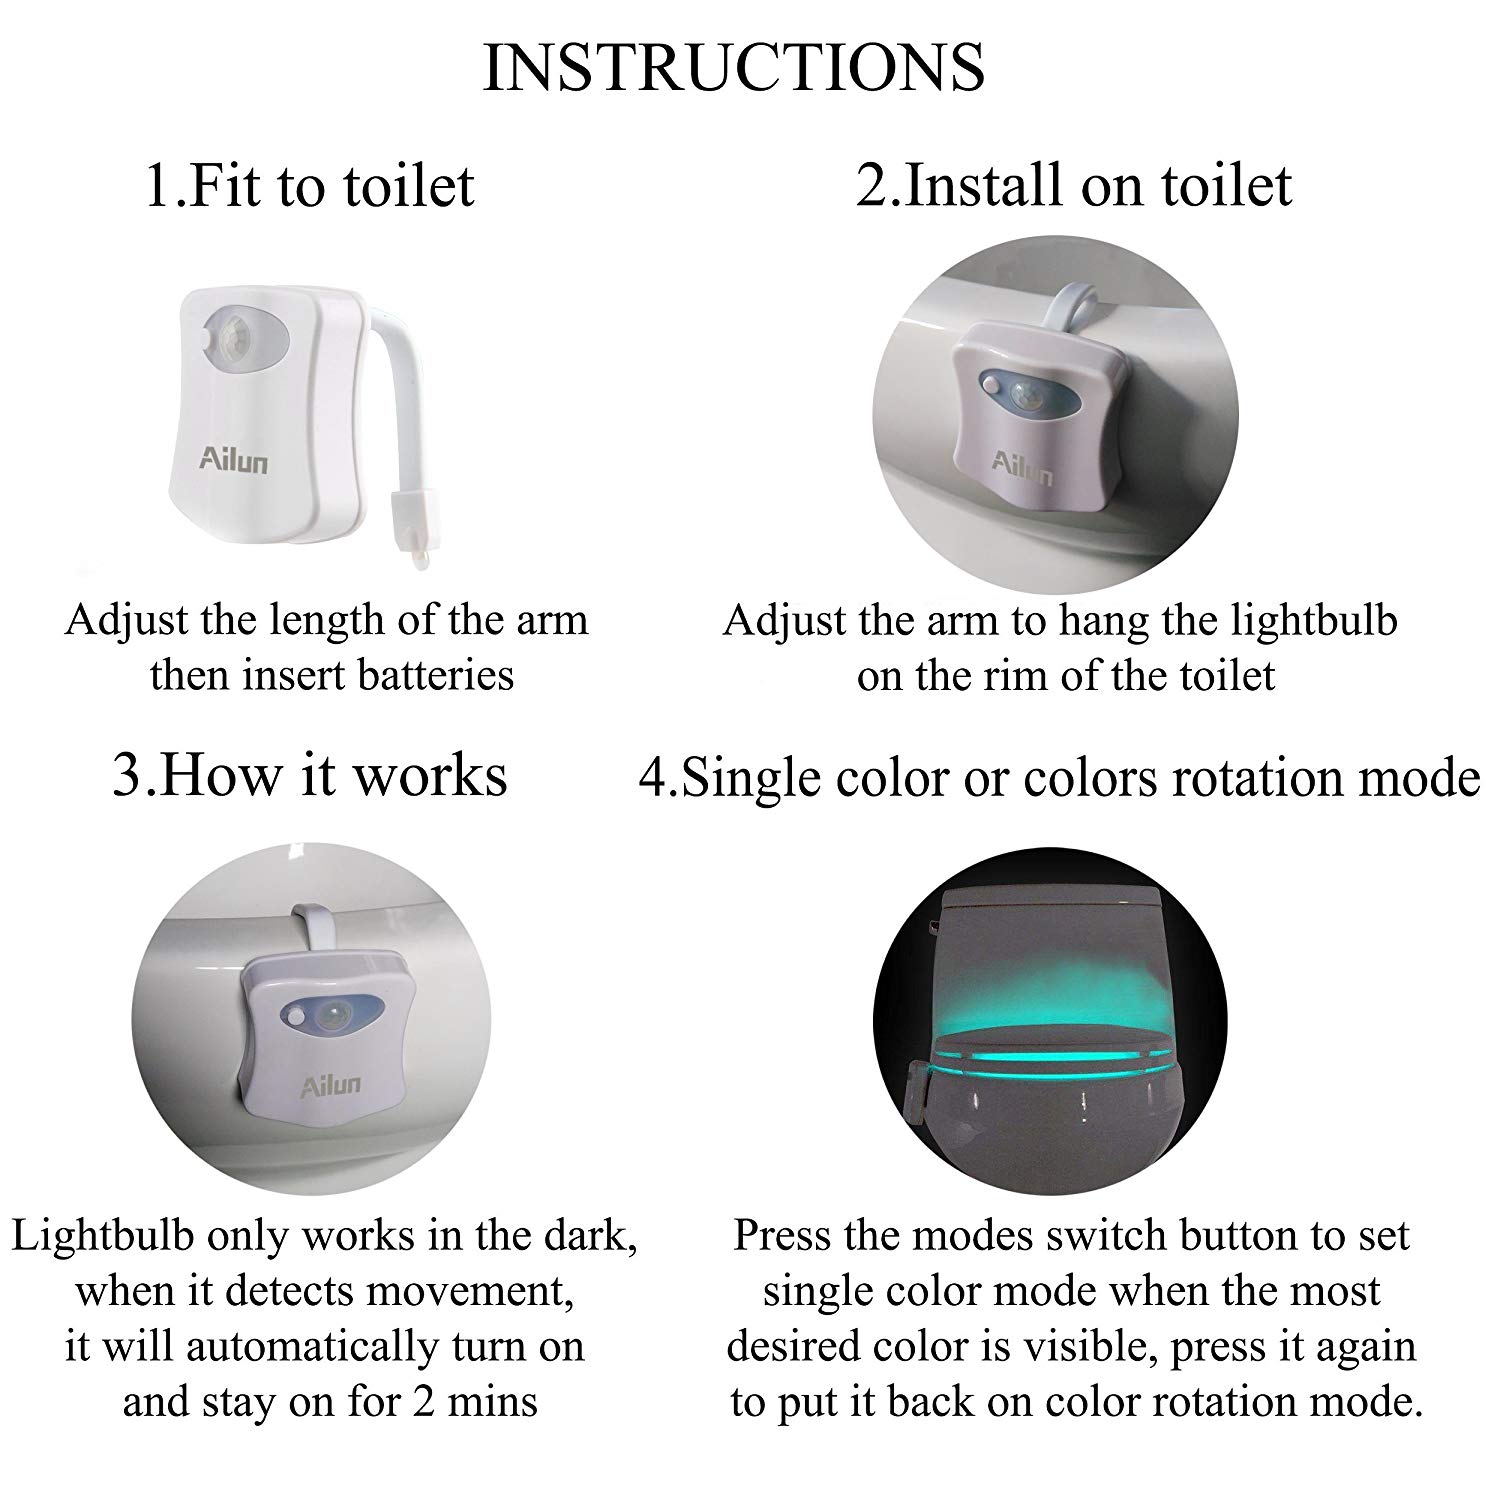 2 Pack 16 Color Change Night Toilet Light LED Motion Sensor Toilet Night  Light